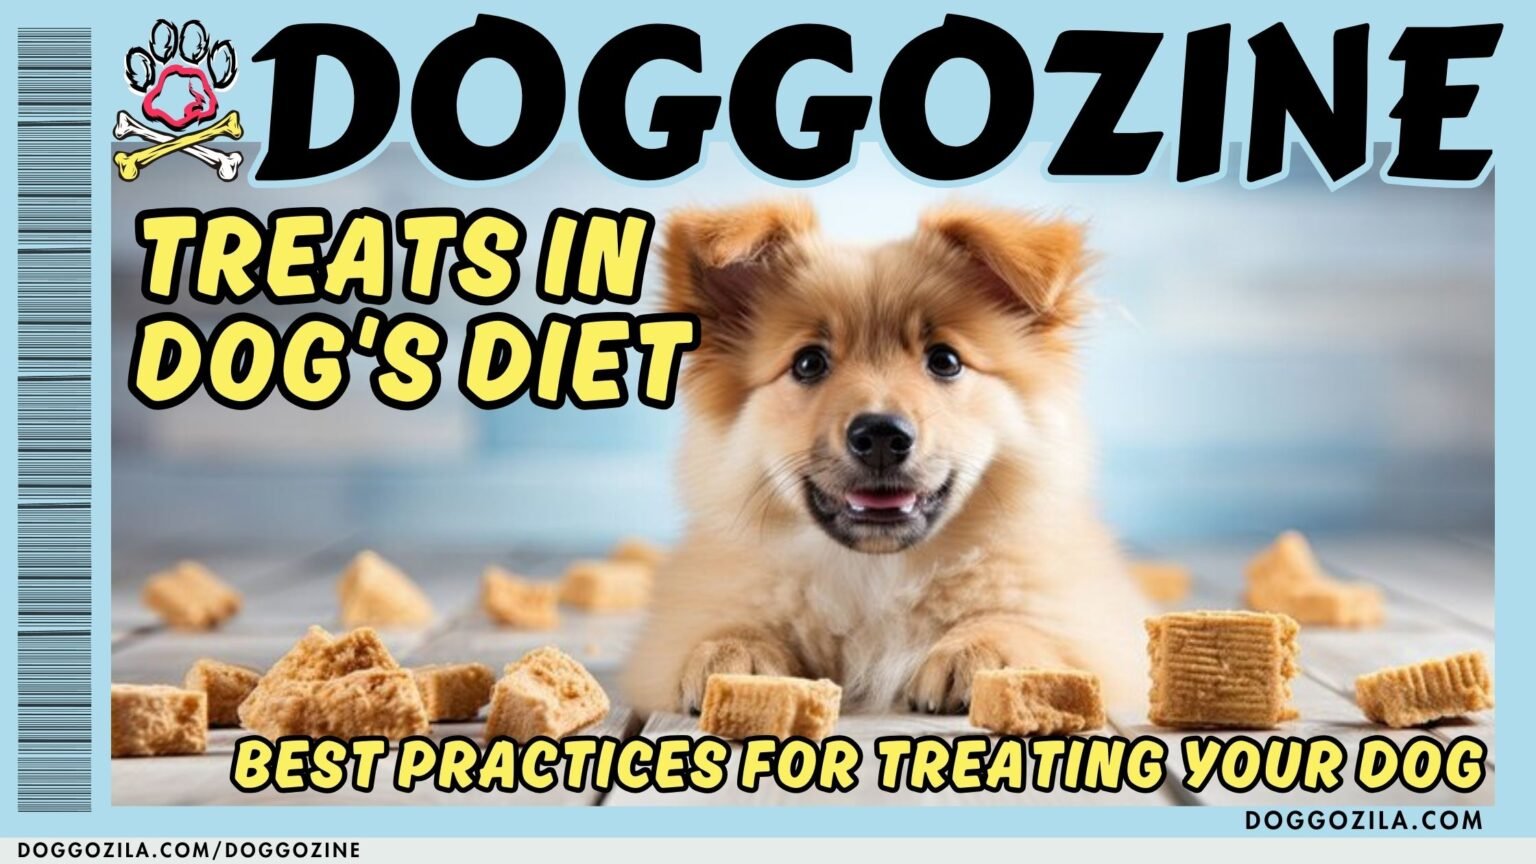 TREATS IN DOG'S DIET